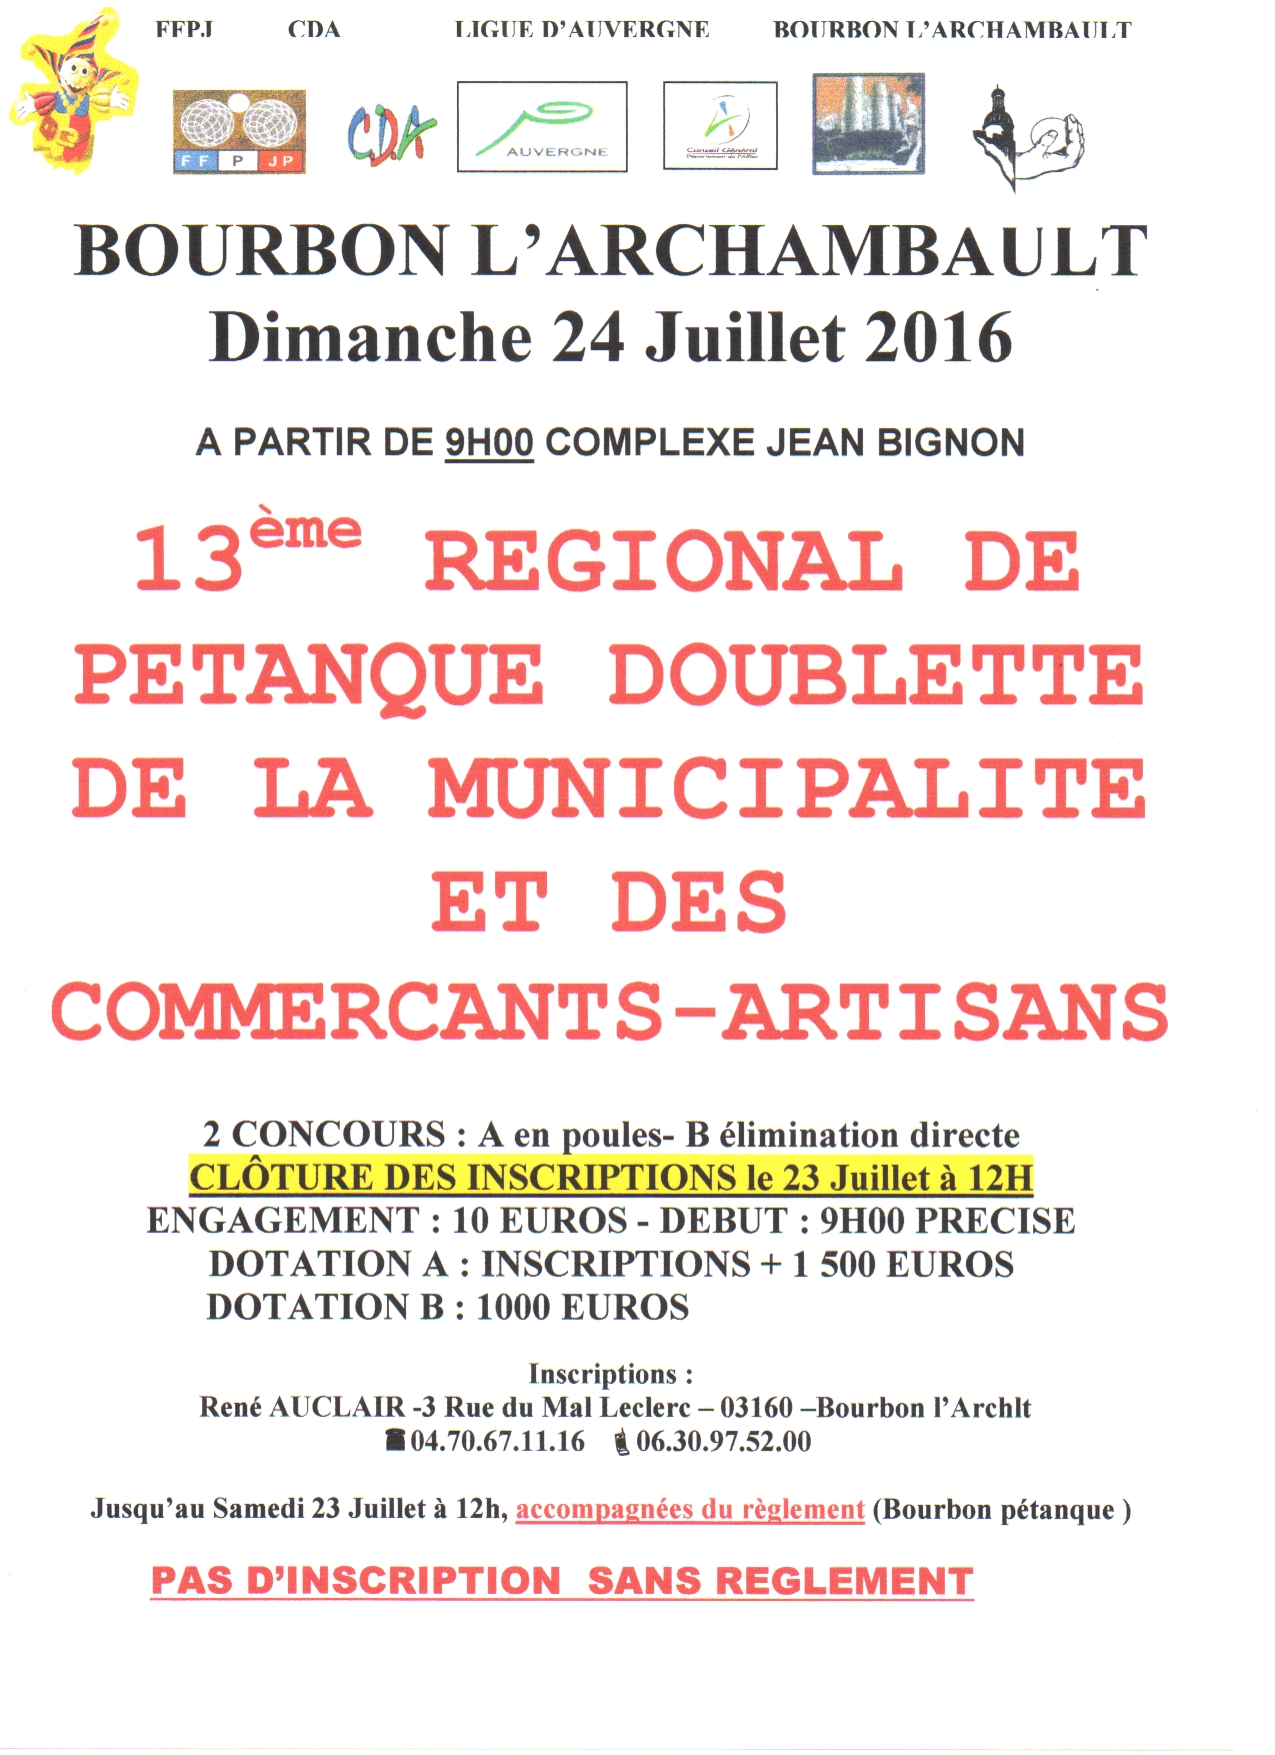 13 ème Régional de BOURBON - PETANQUE